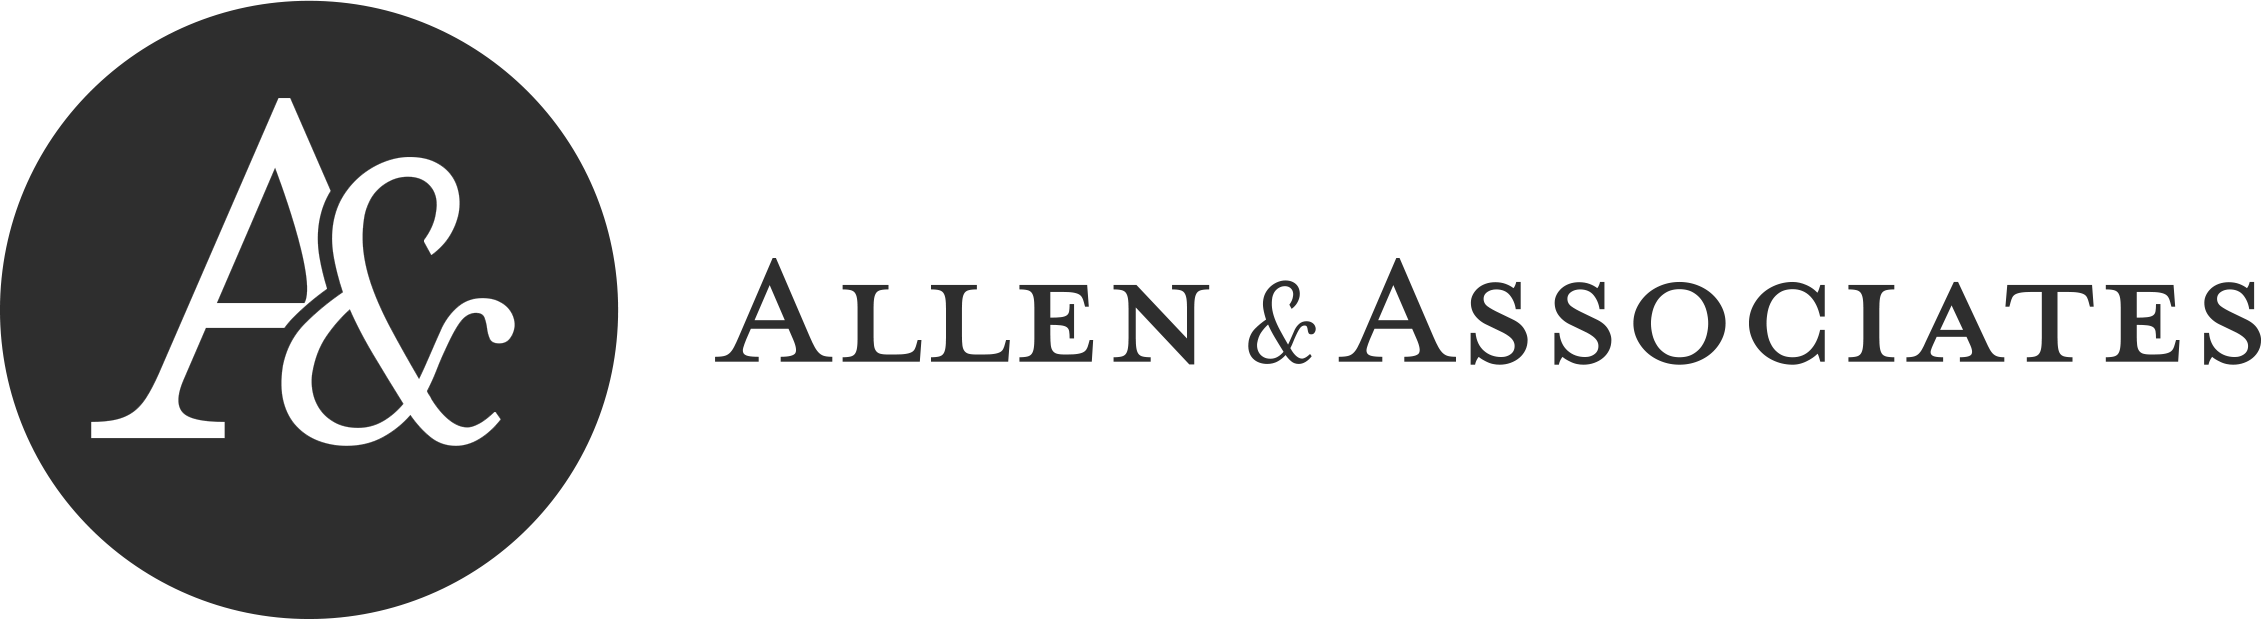 Allen & Associates